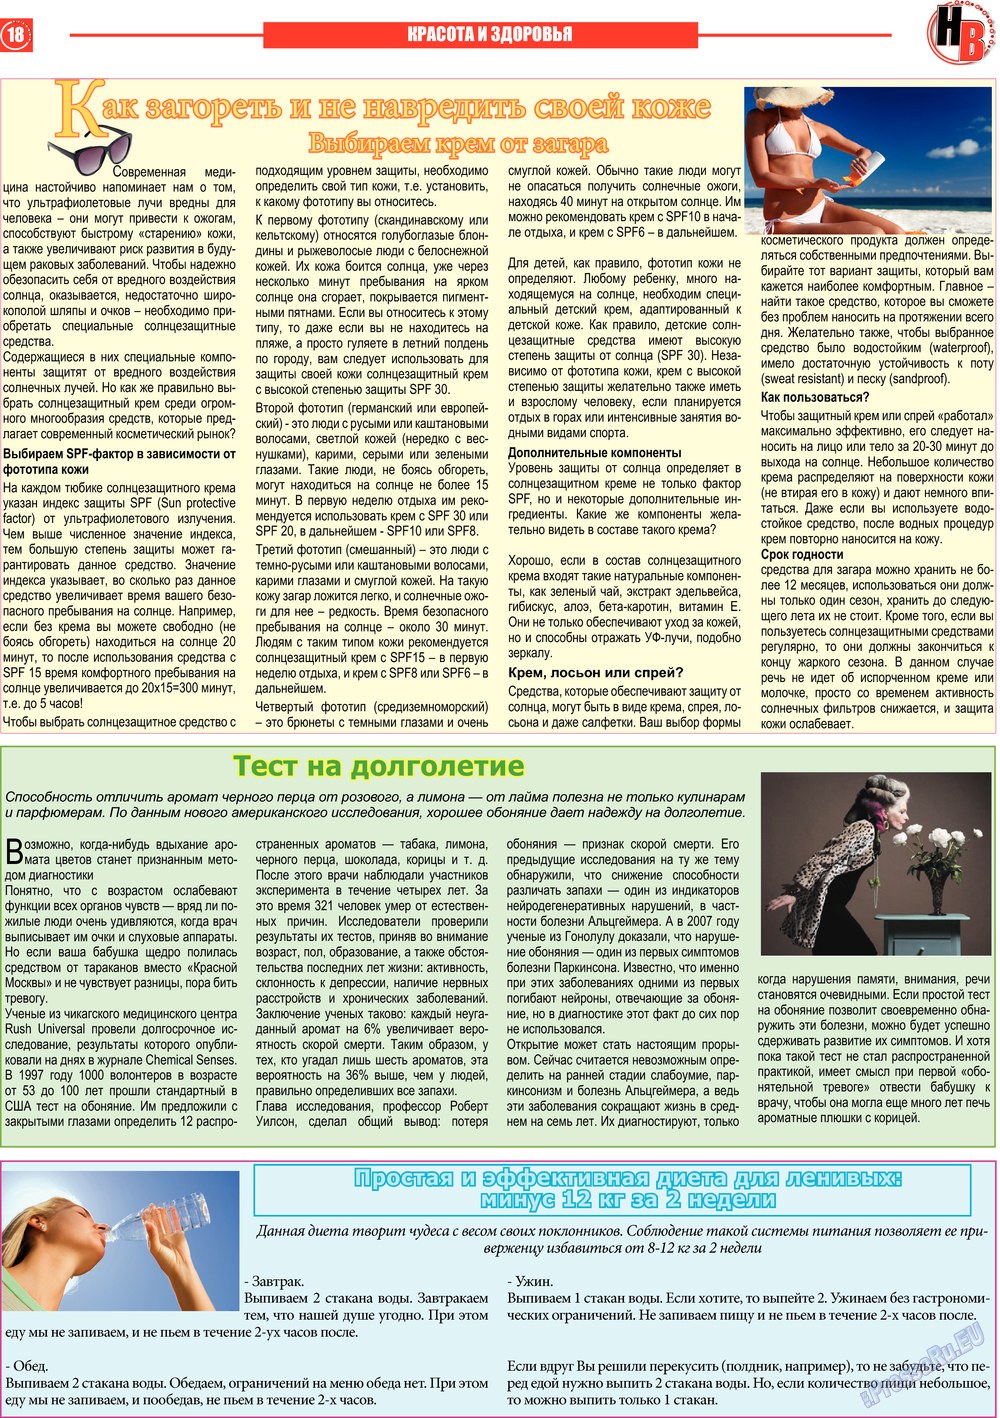 Наше время, газета. 2013 №6 стр.18